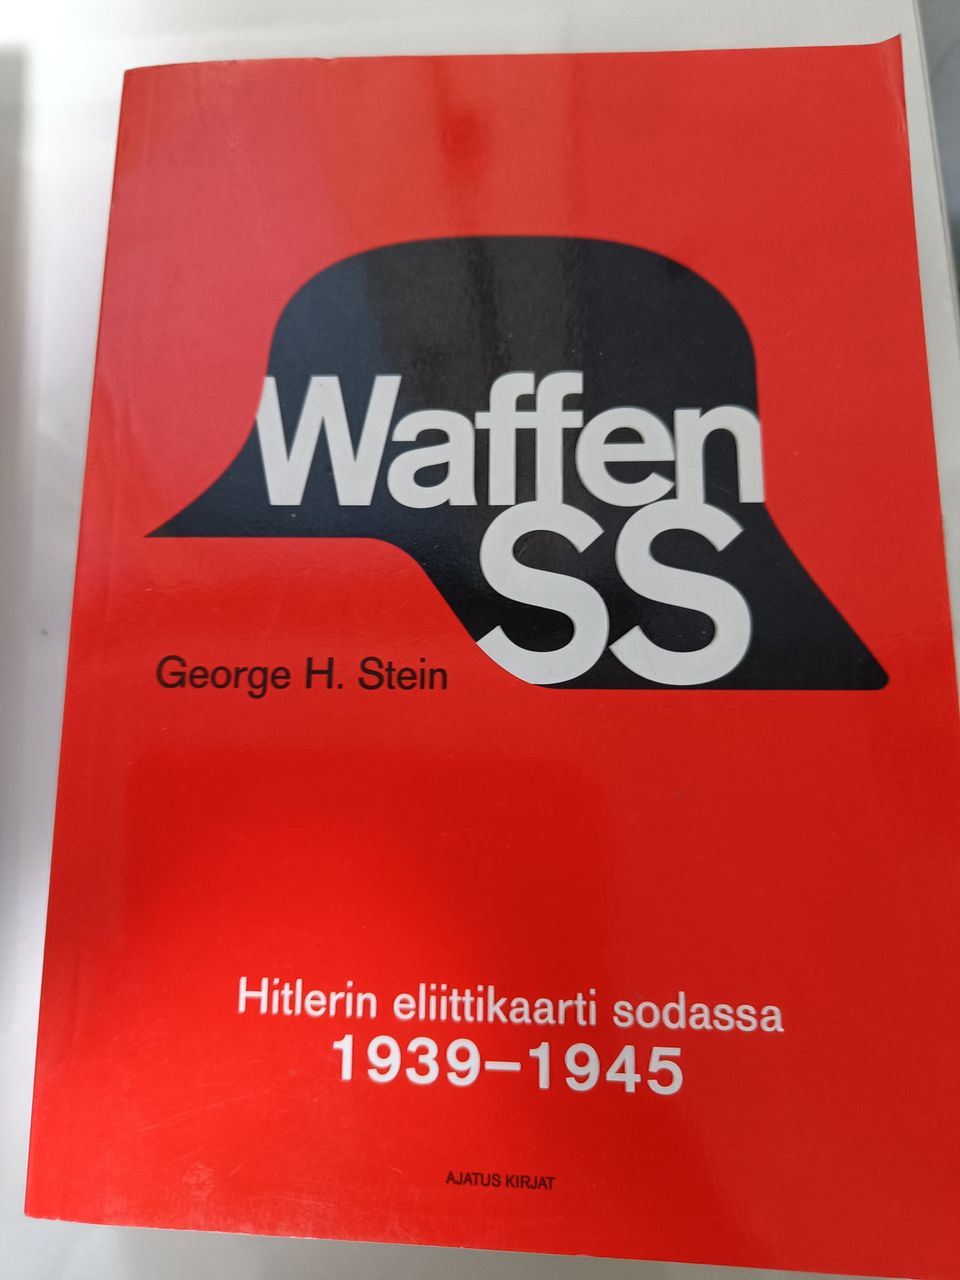 George H. Stein - Waffen-SS